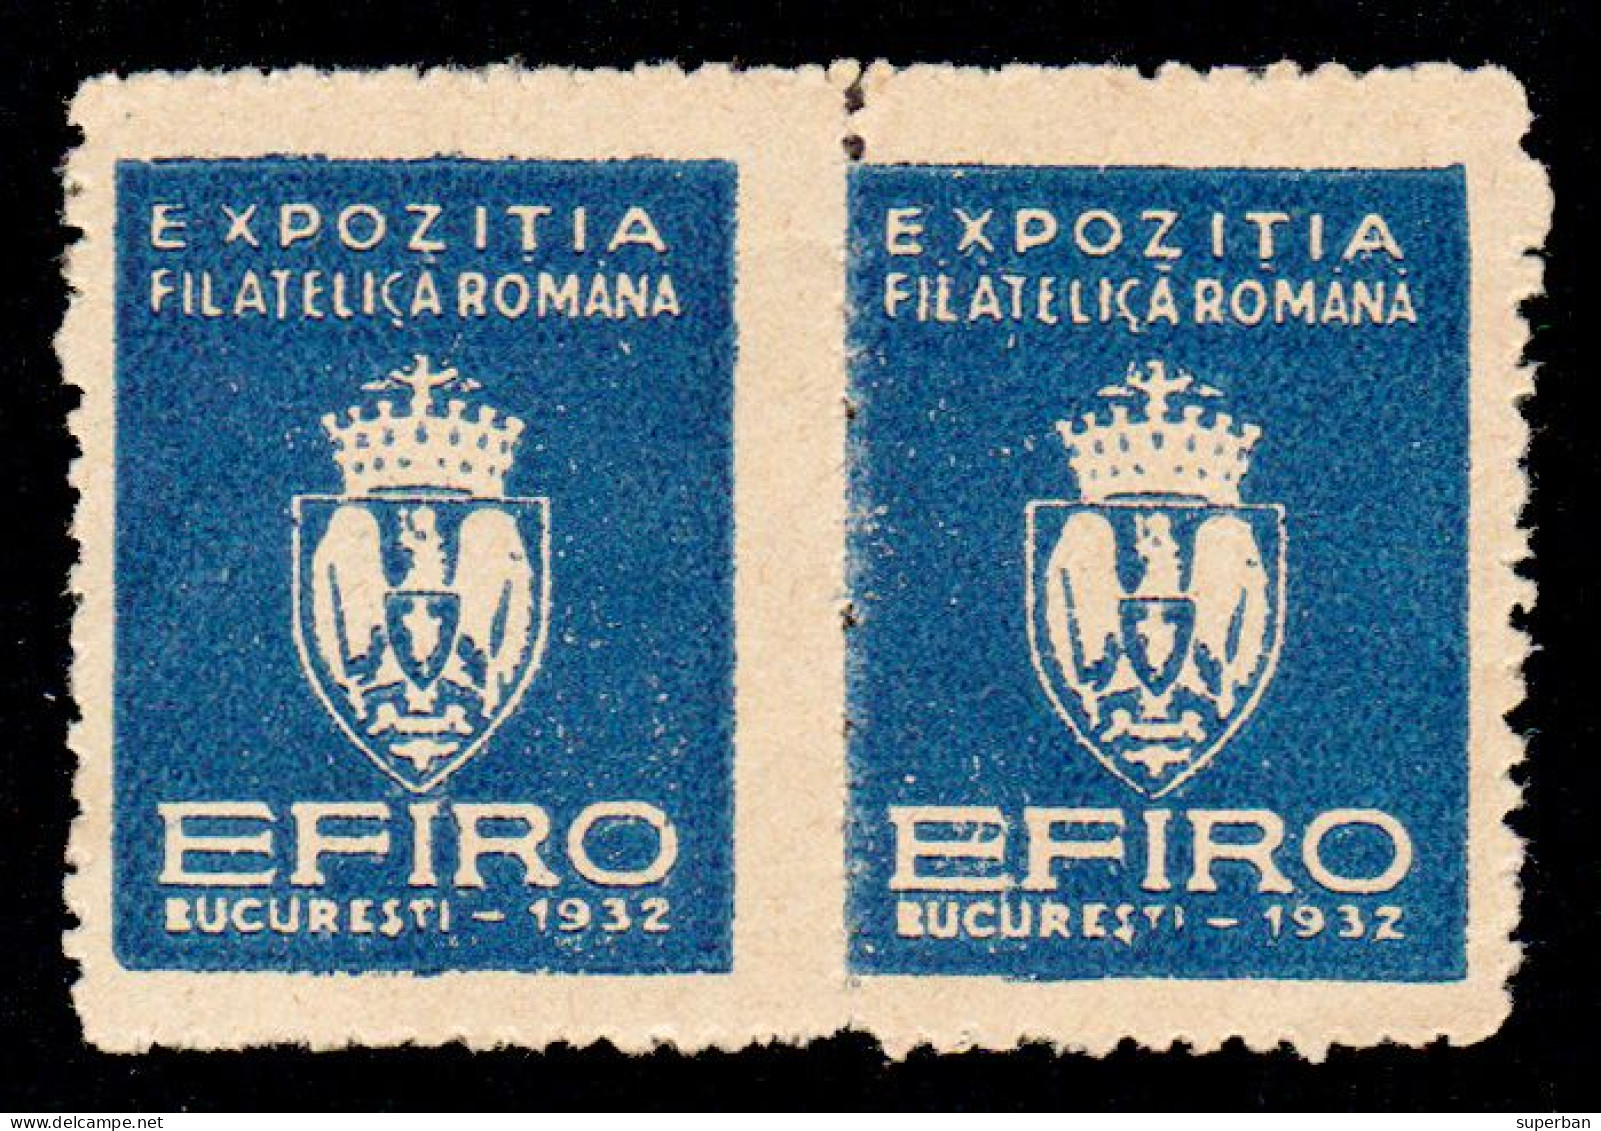 ROUMANIE / ROMANIA - VIGNETTE / CINDERELLA - 2 X EFIRO 1932 - EXPOZITIA FILATELICA ROMÂNA [ MNH ] - RRR ! (am819) - Fiscale Zegels